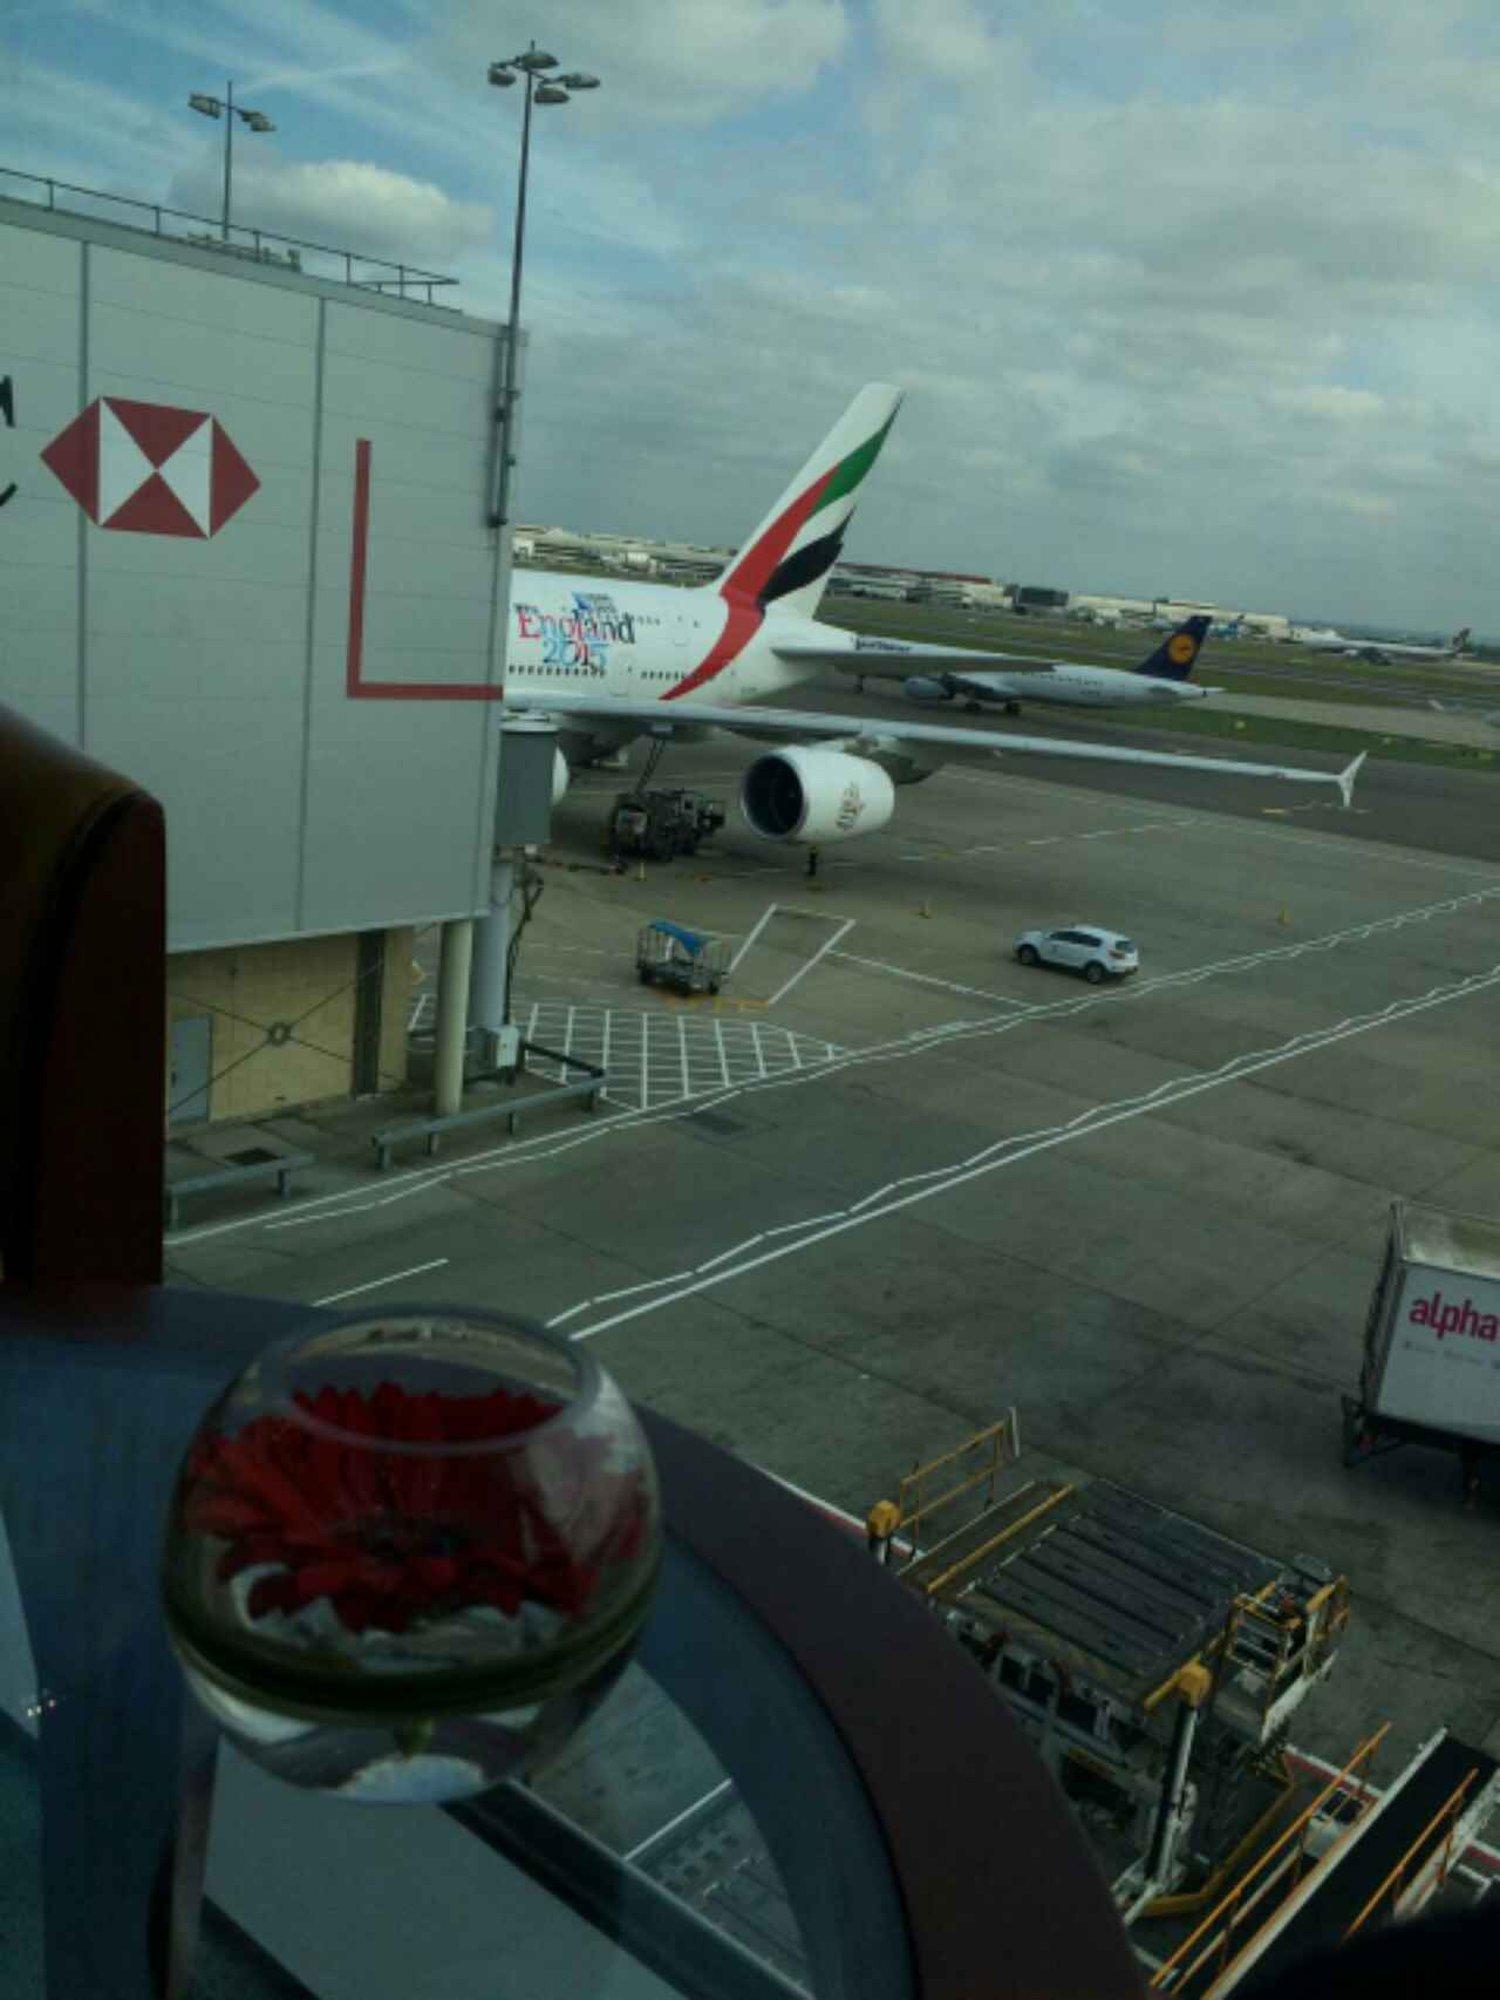 The Emirates Lounge image 7 of 10